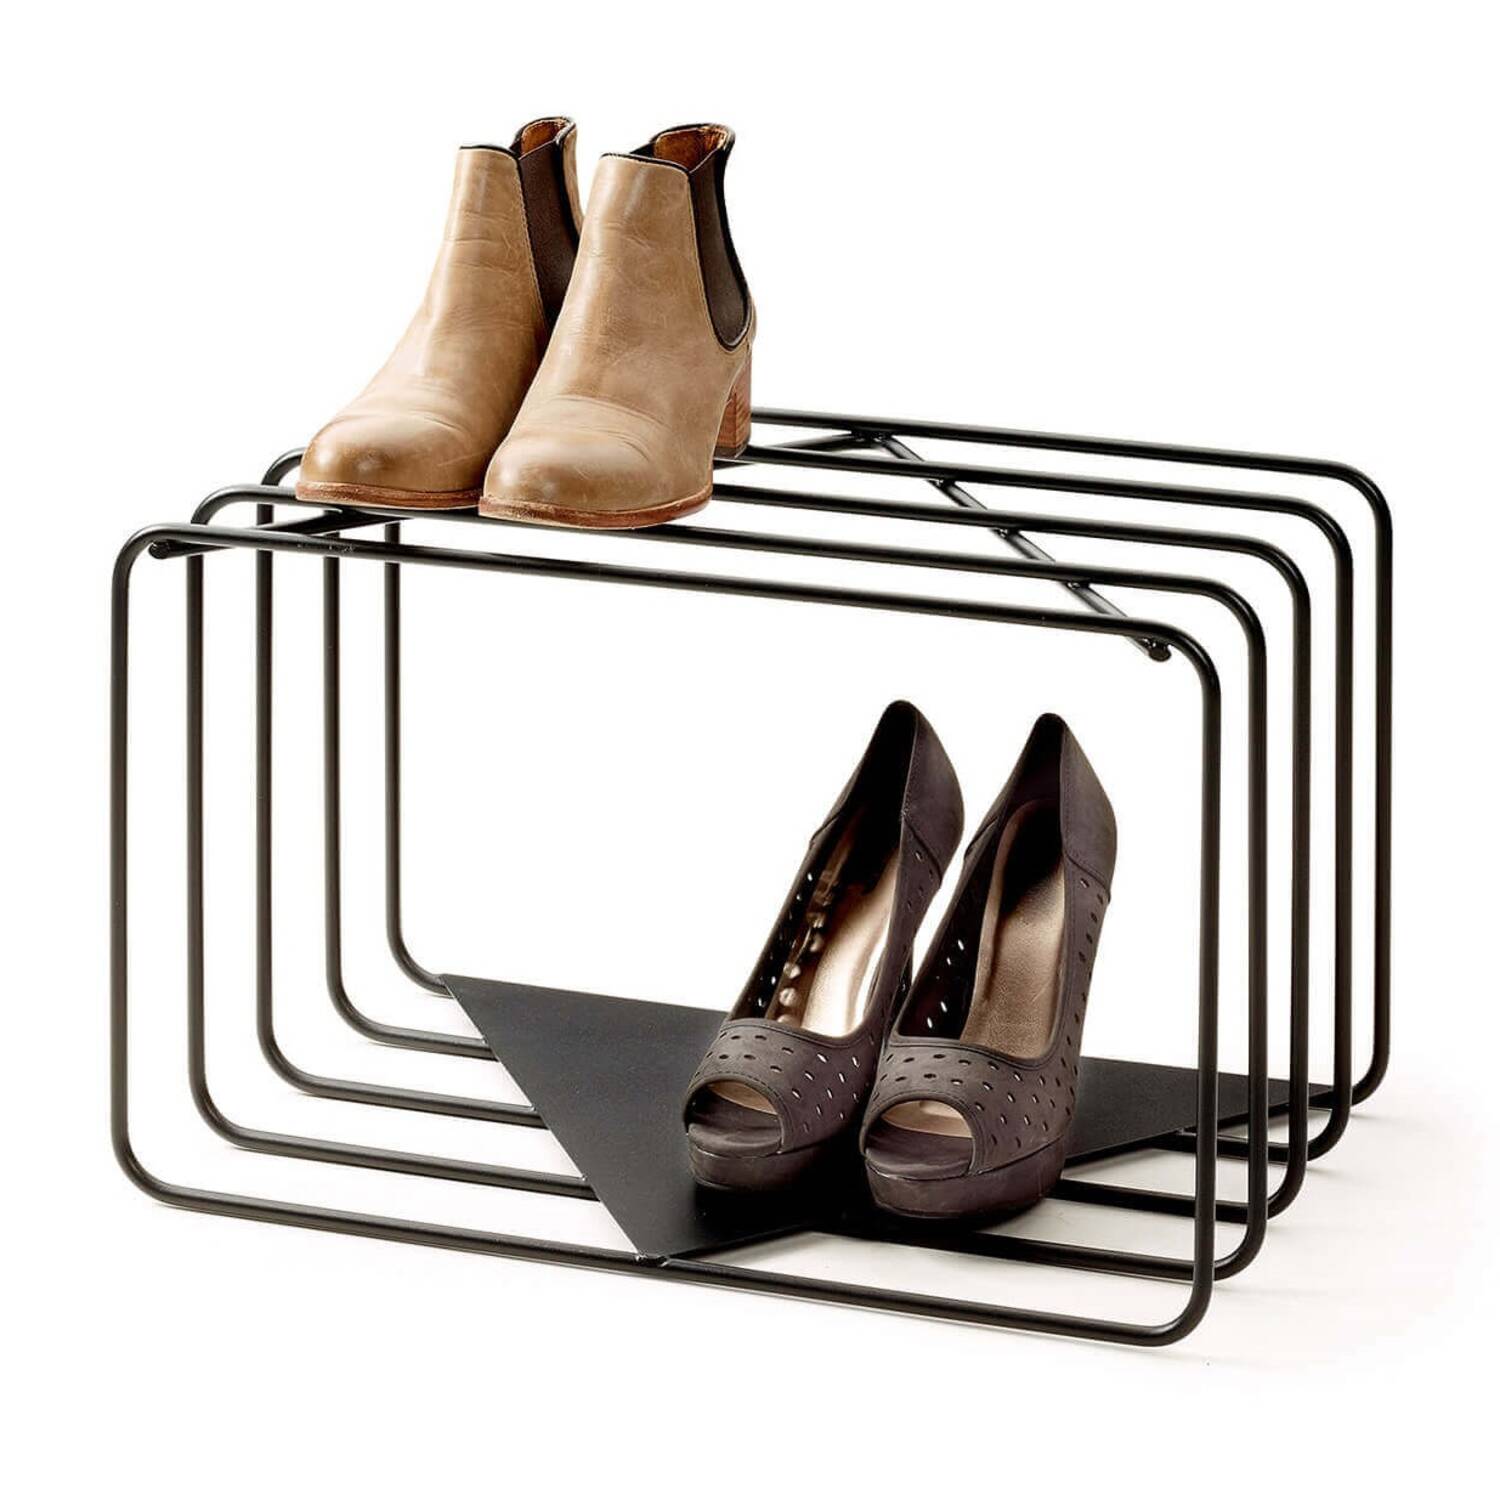 Подставка для обуви Iron shoe stand